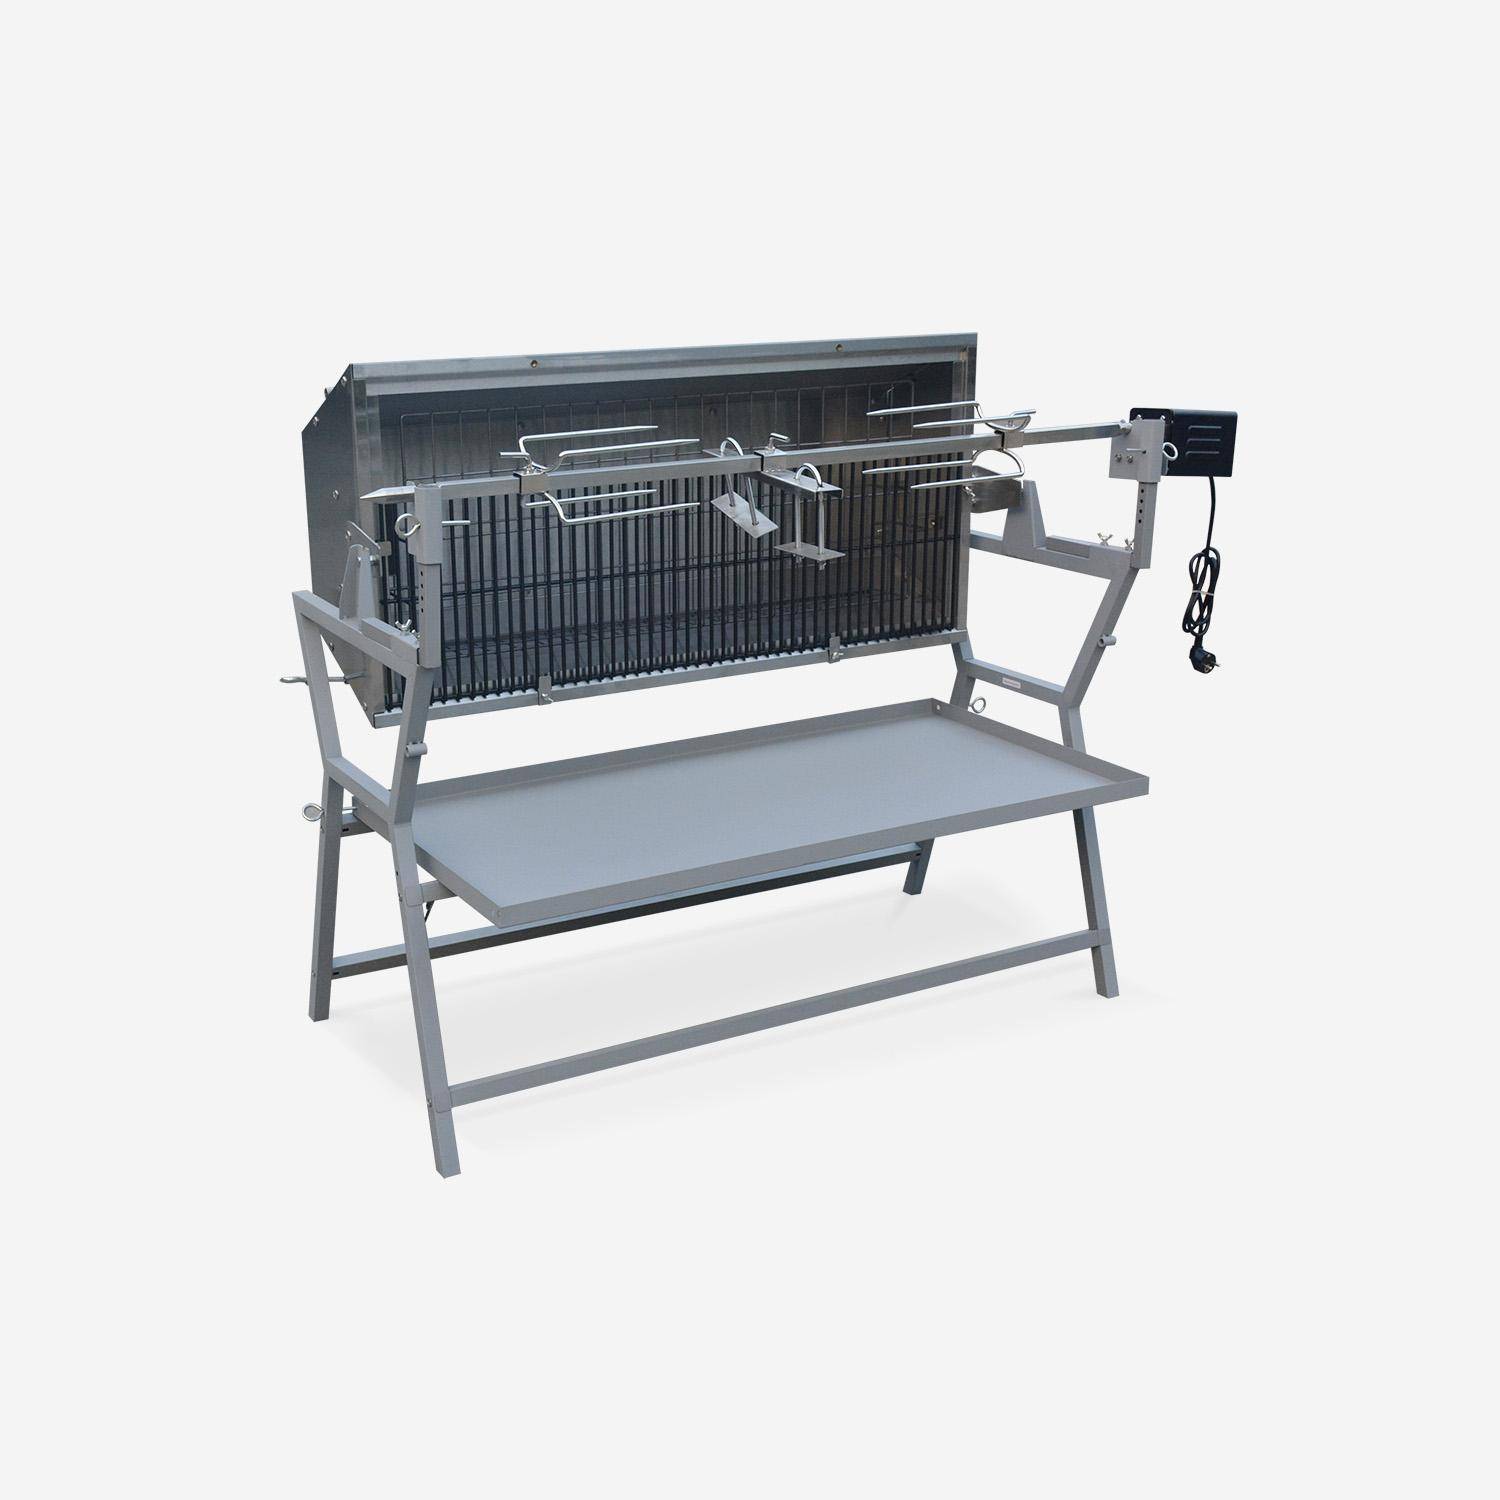 Girarrosto elettrico inclinabile -  Mathurin Inox - Girarrosto, barbecue a carbone con motore per grigliate, cene Photo3